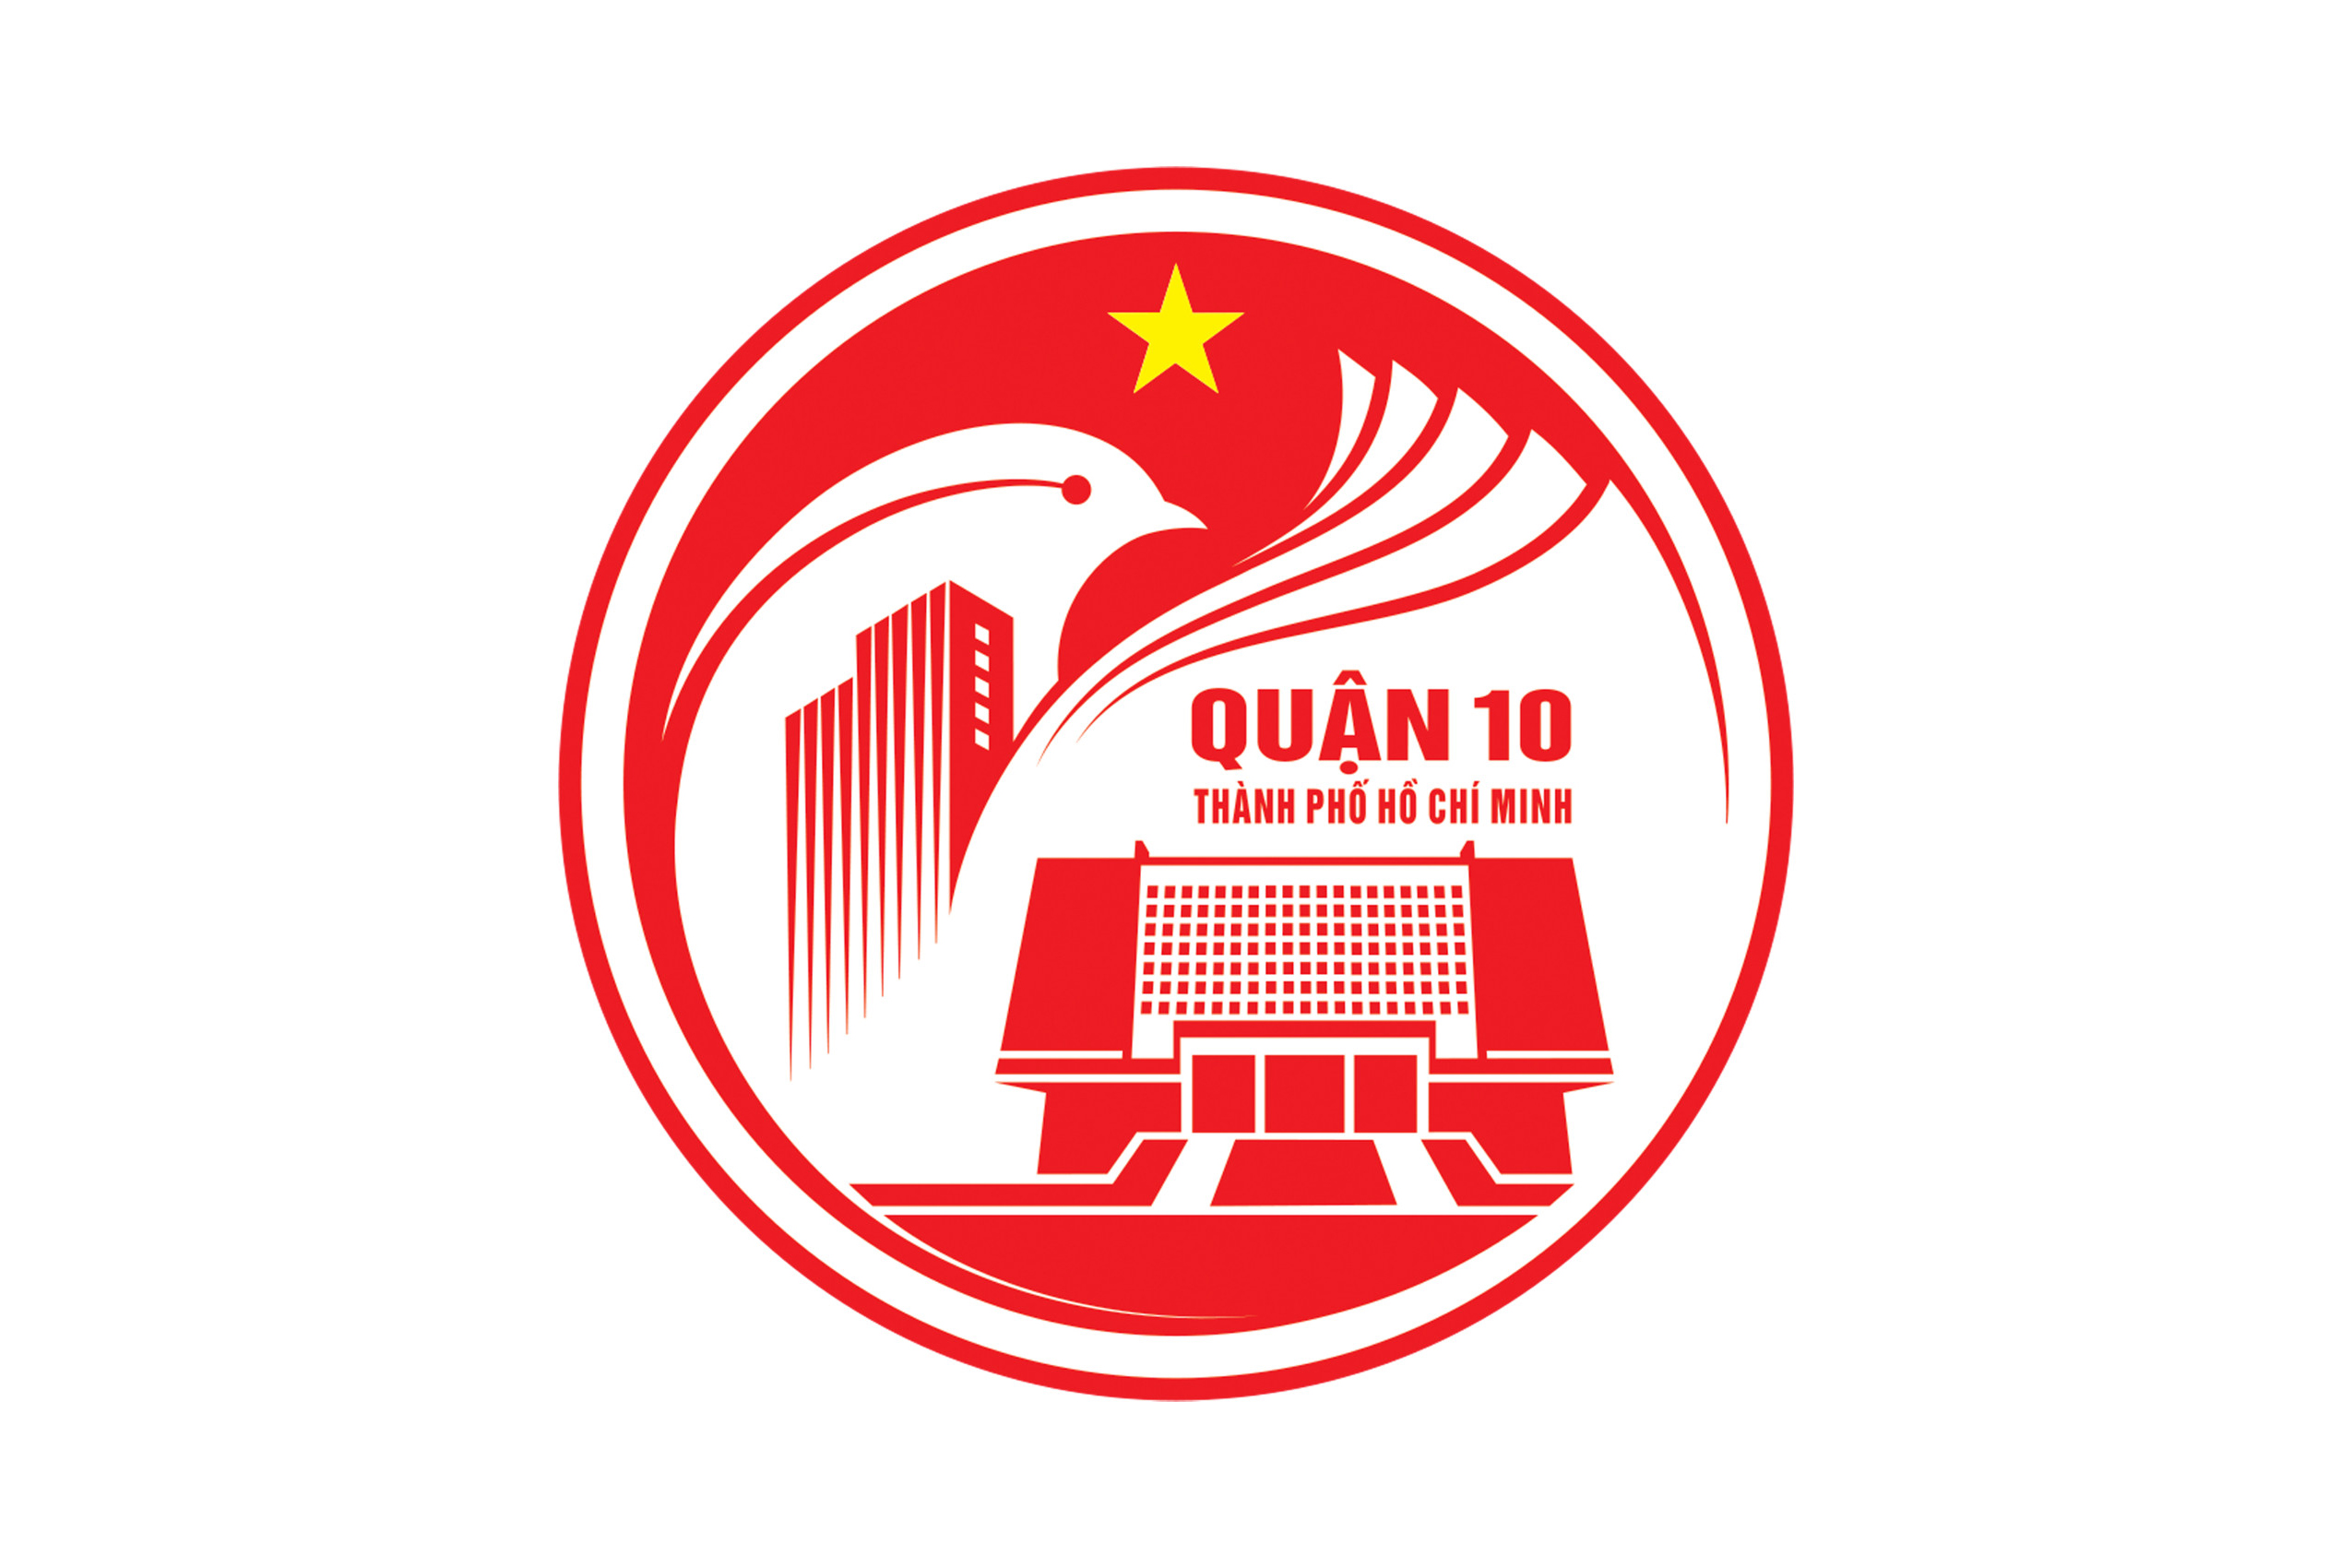 Image: Biểu trưng (logo) Quận 10, Thành phố Hồ Chí Minh